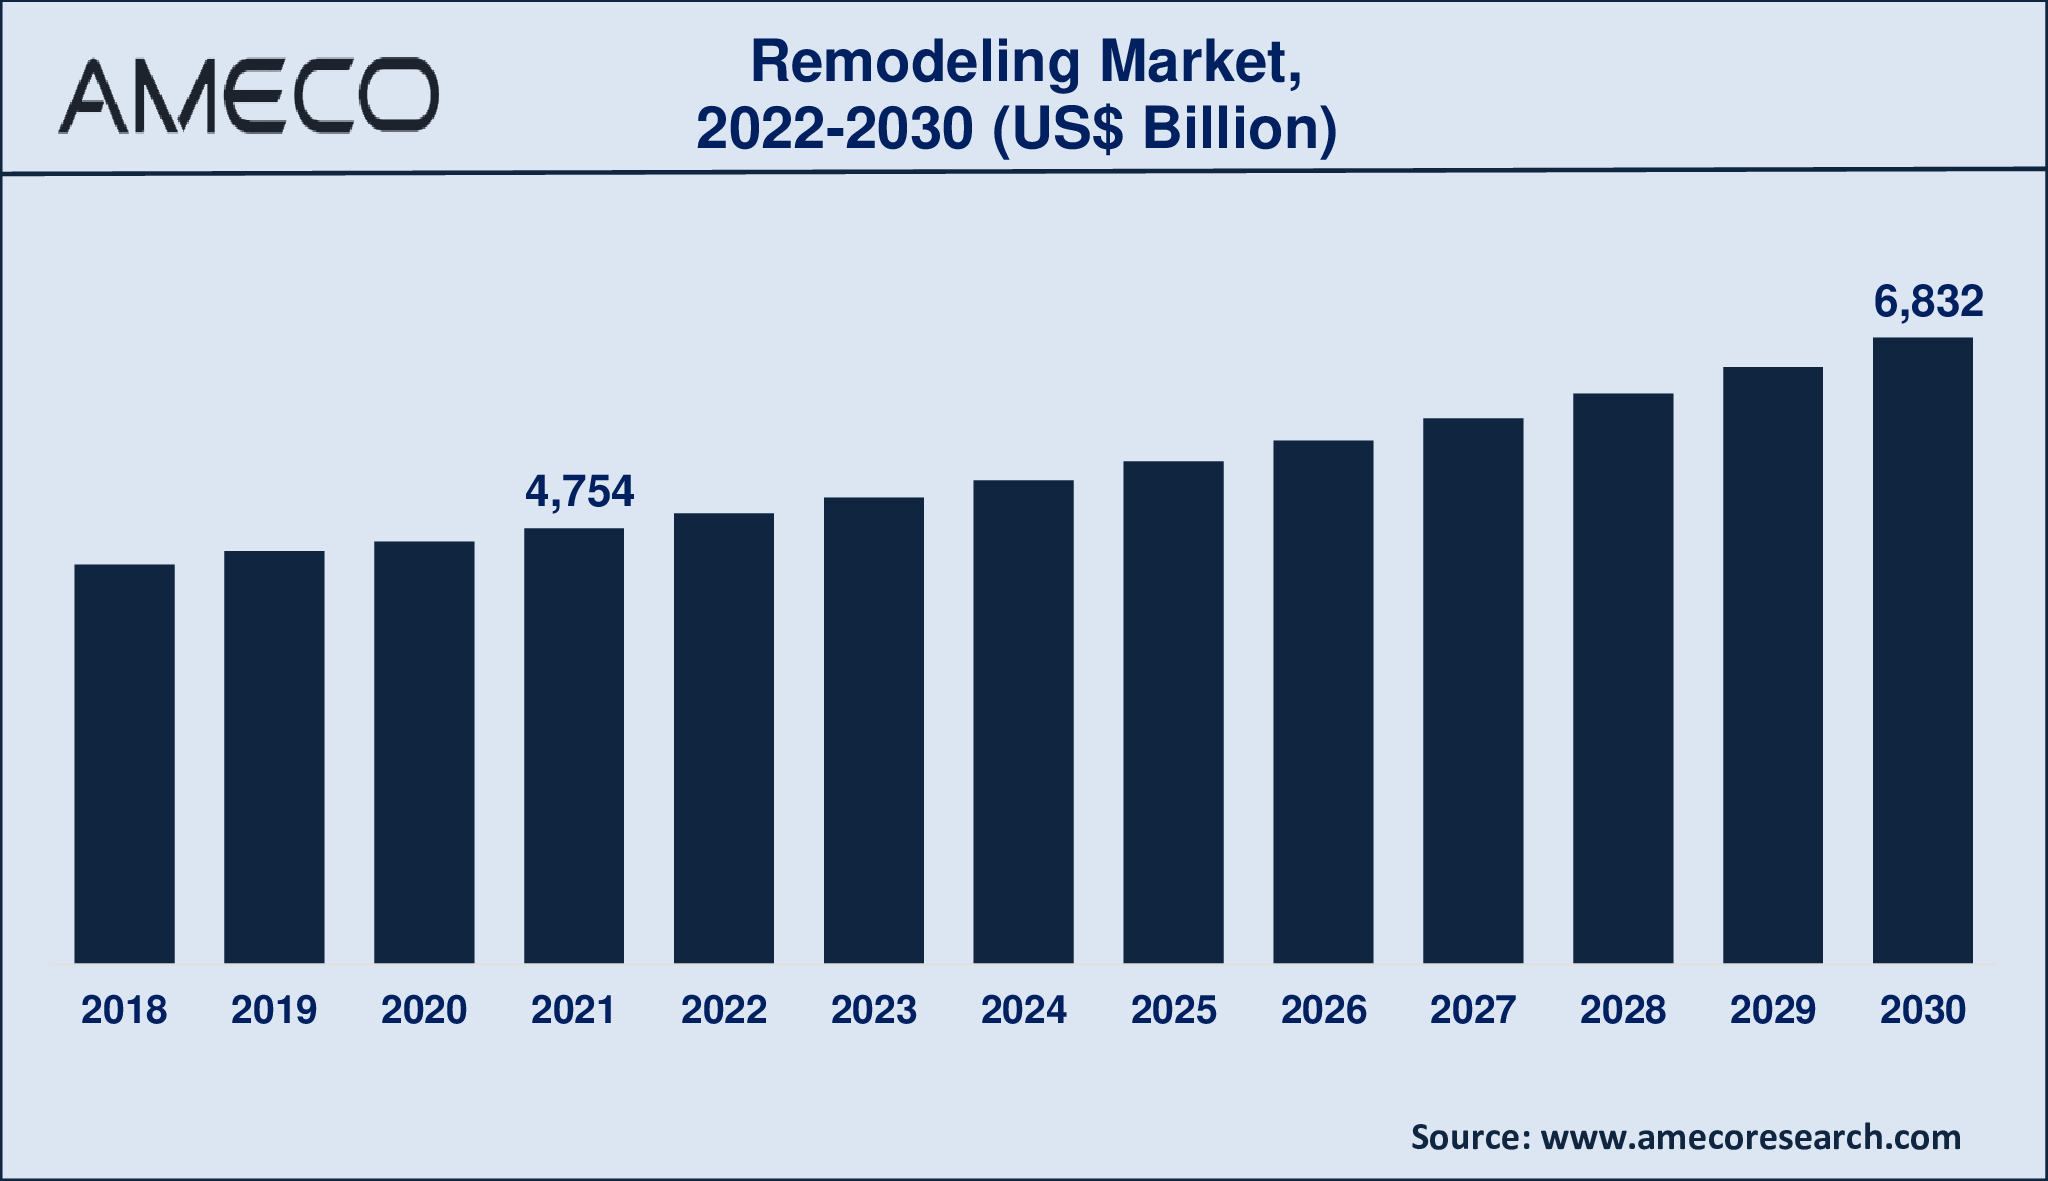 Remodeling Market Size